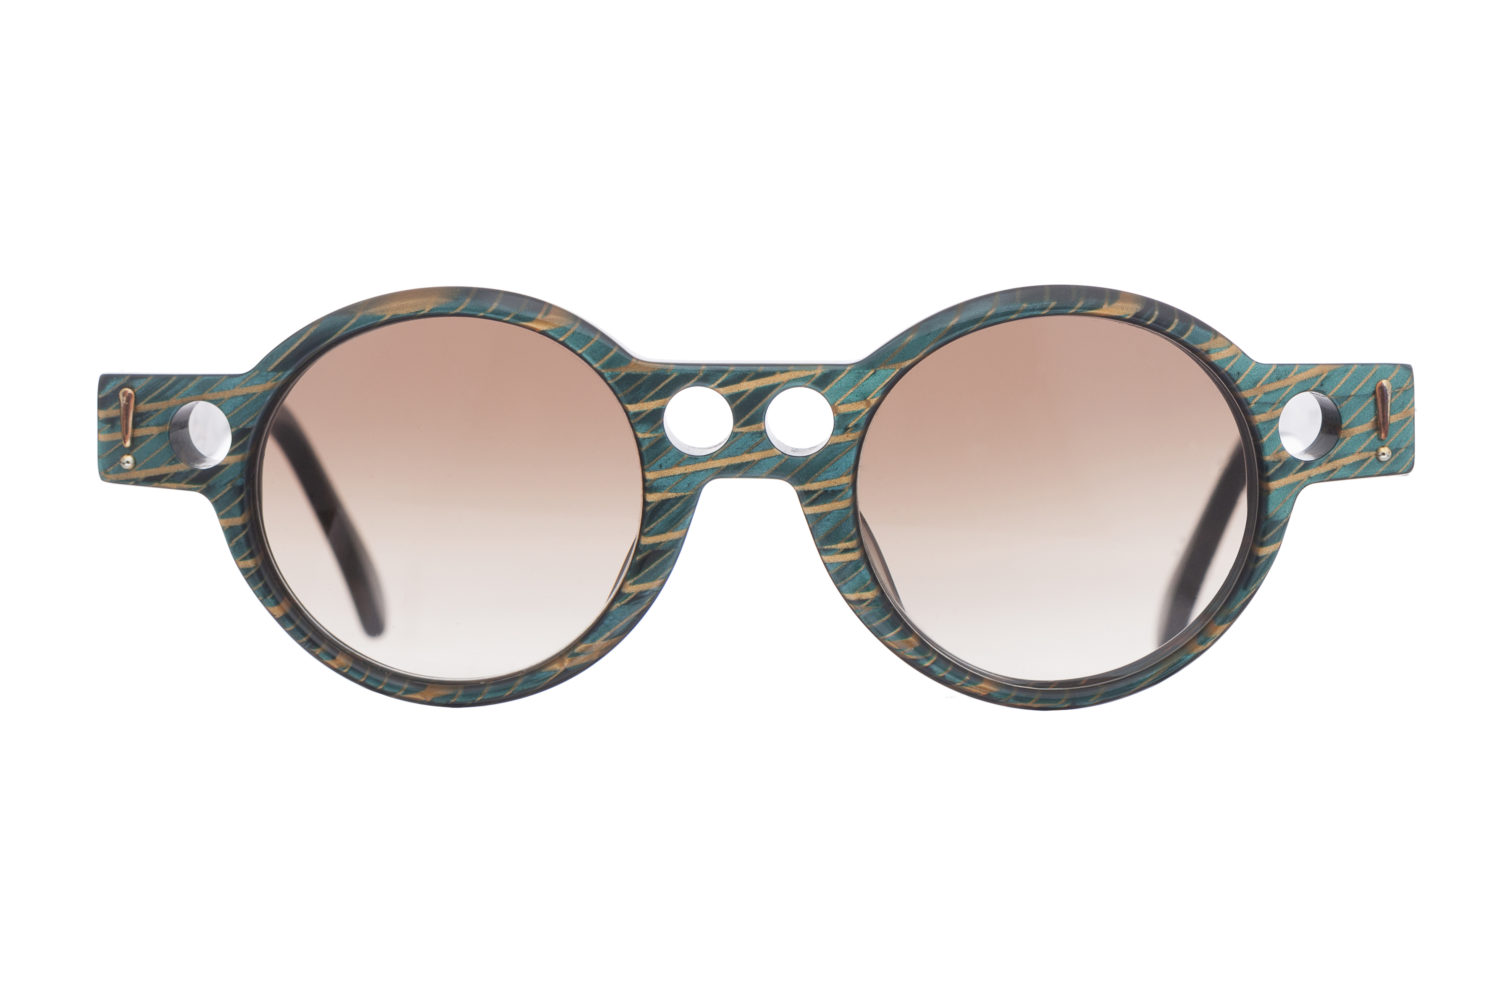 Sonnenbrille kaufen Berlin An drei Standorten verkauft Lunettes in Berlin wunderschöne, ungetragene Vintage-Sonnenbrillen.